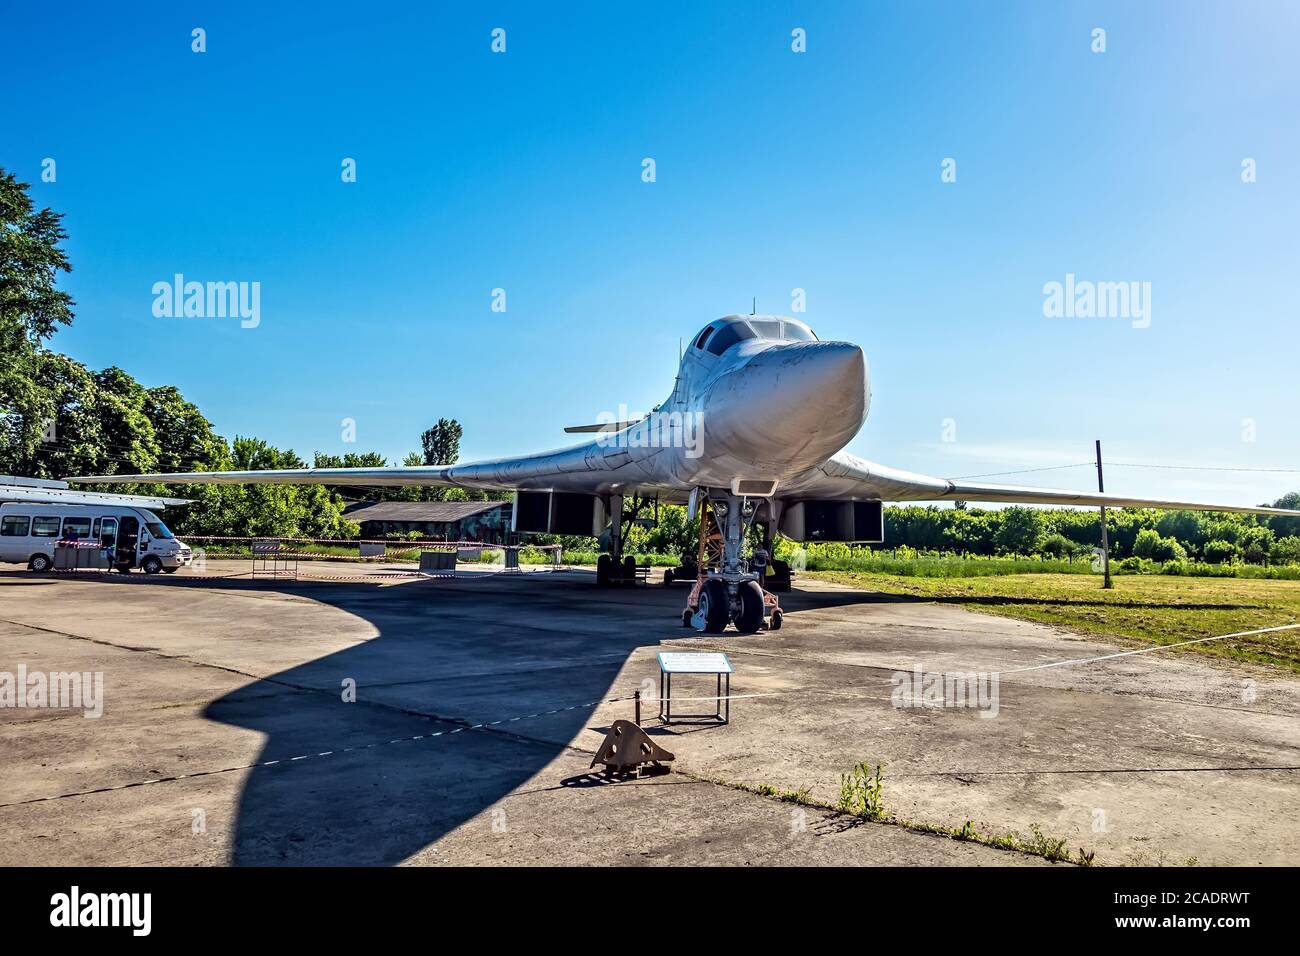 POLTAVA, UCRANIA - 19 DE OCTUBRE de 2019: Tupolev tu-160 avión de transporte de misiles 'Black jack' Belyy Lebed. Supersónico estratégico bombardero pesado nuclear. NAT Foto de stock